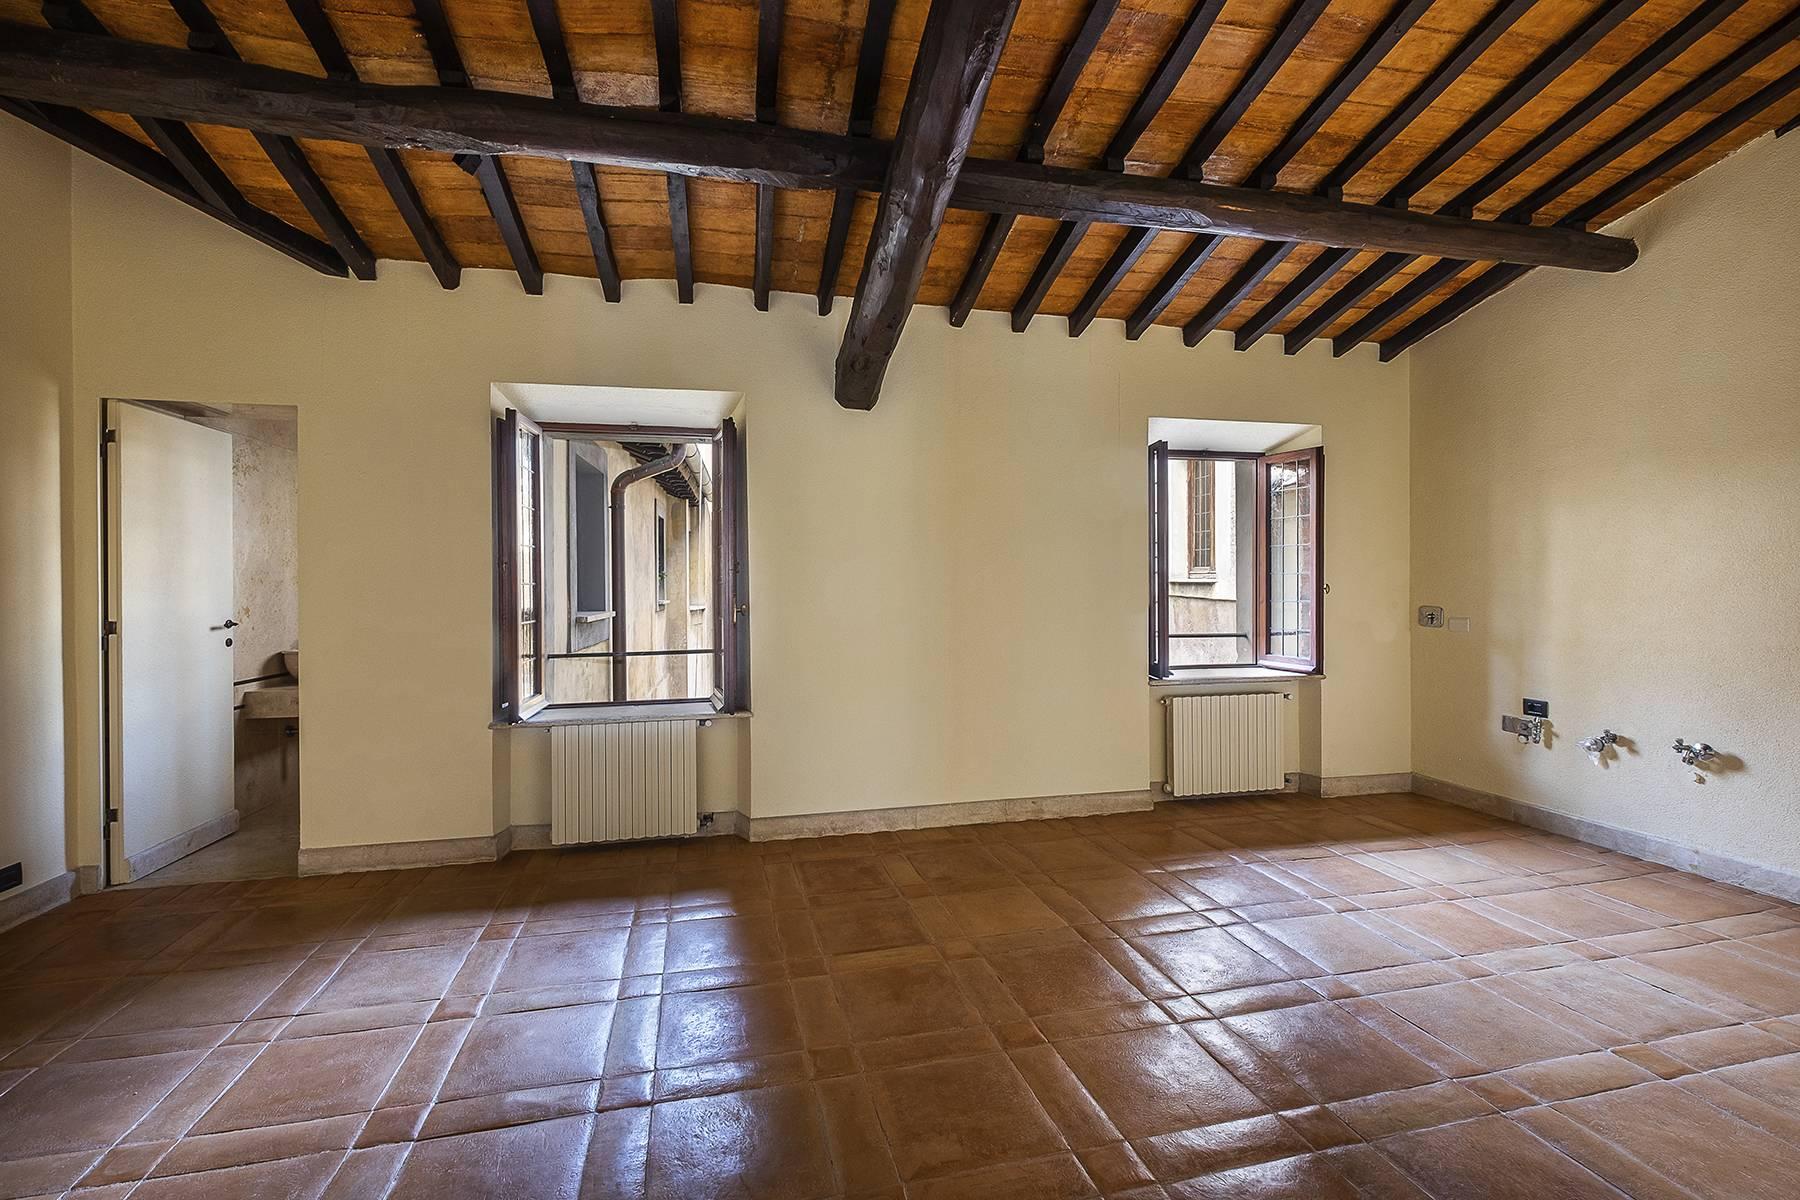 Esclusivo appartamento in centro storico con vista sui tetti di Roma - 22